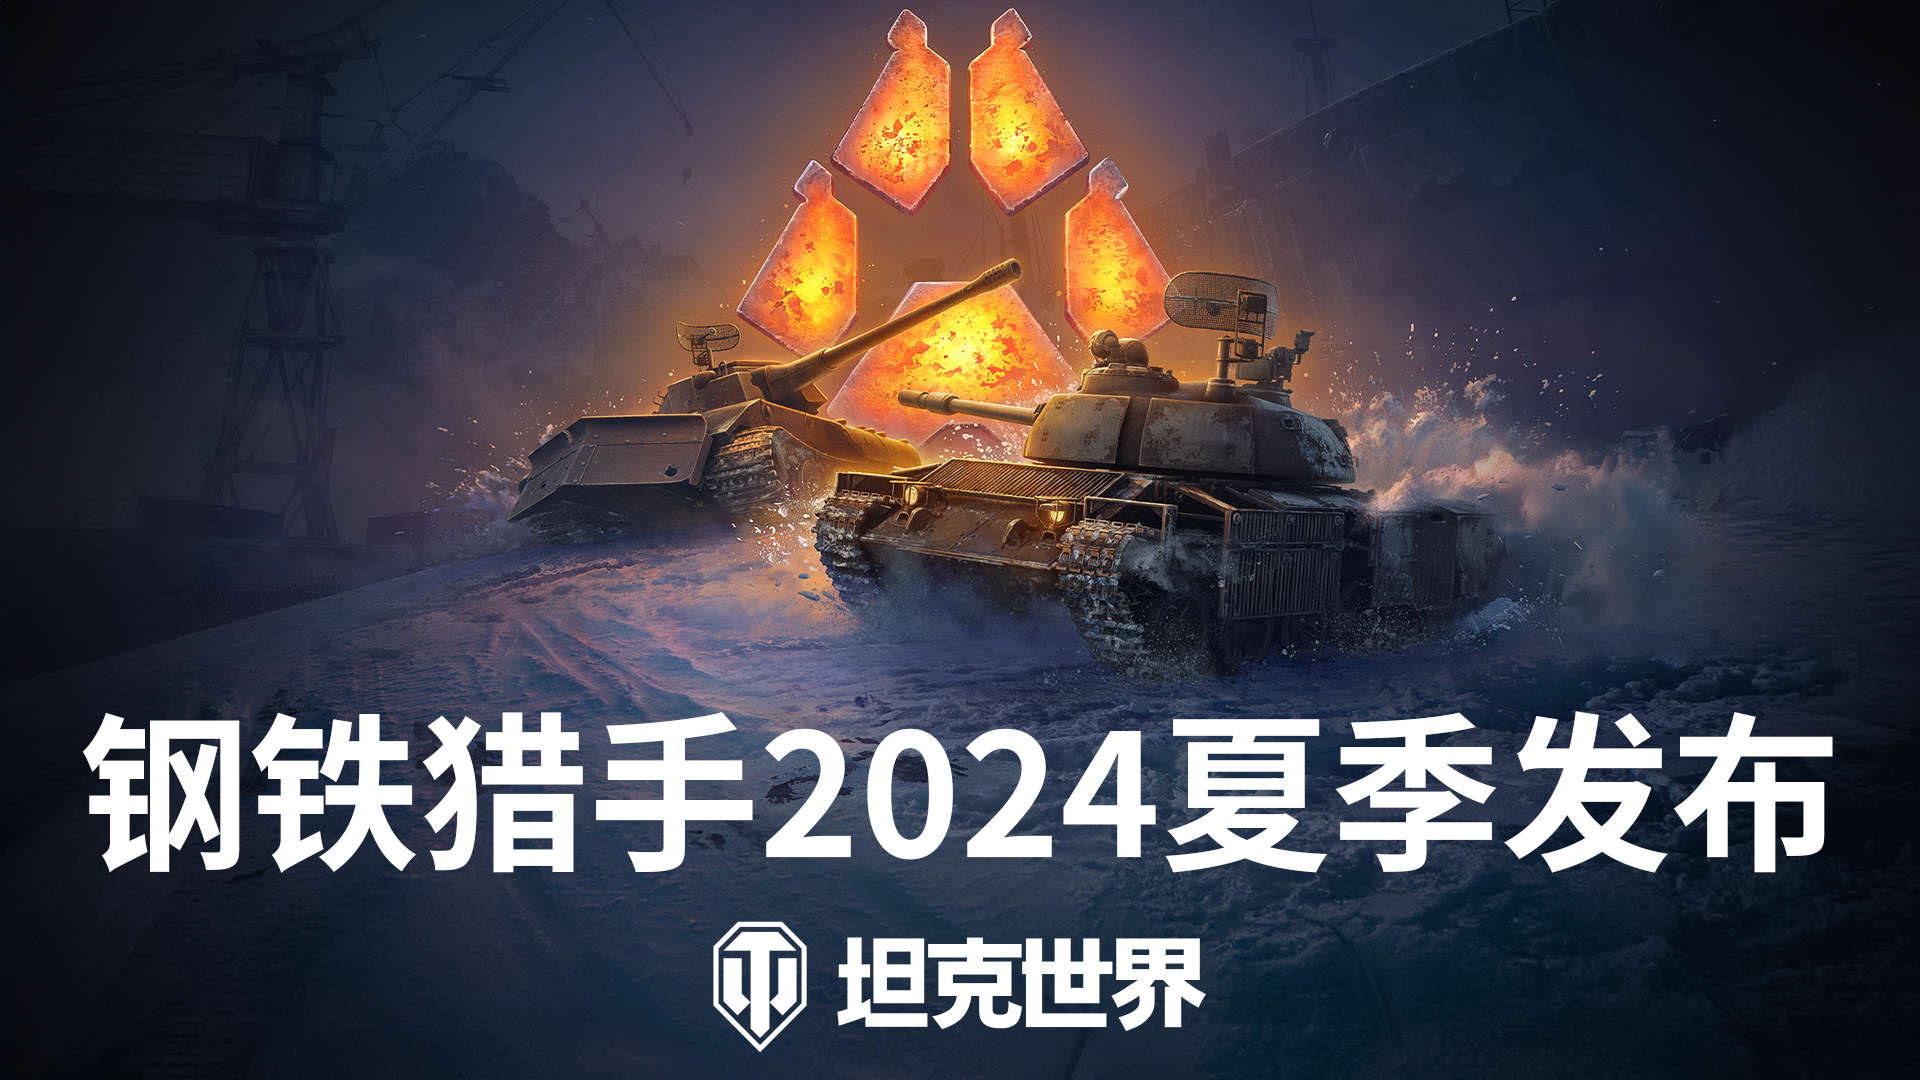 《坦克世界》钢铁猎手新赛季发布,全民挑战赛开启